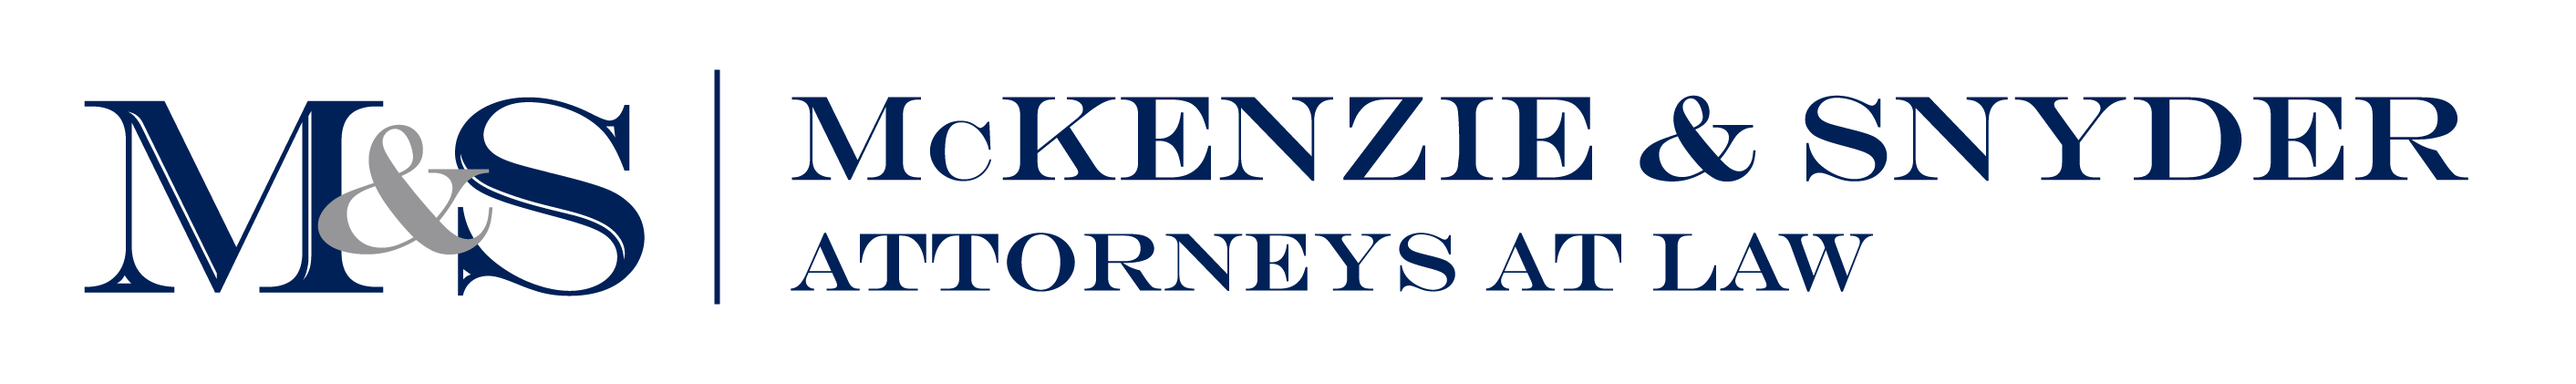 Mckenzie & Snyder LLP Logo